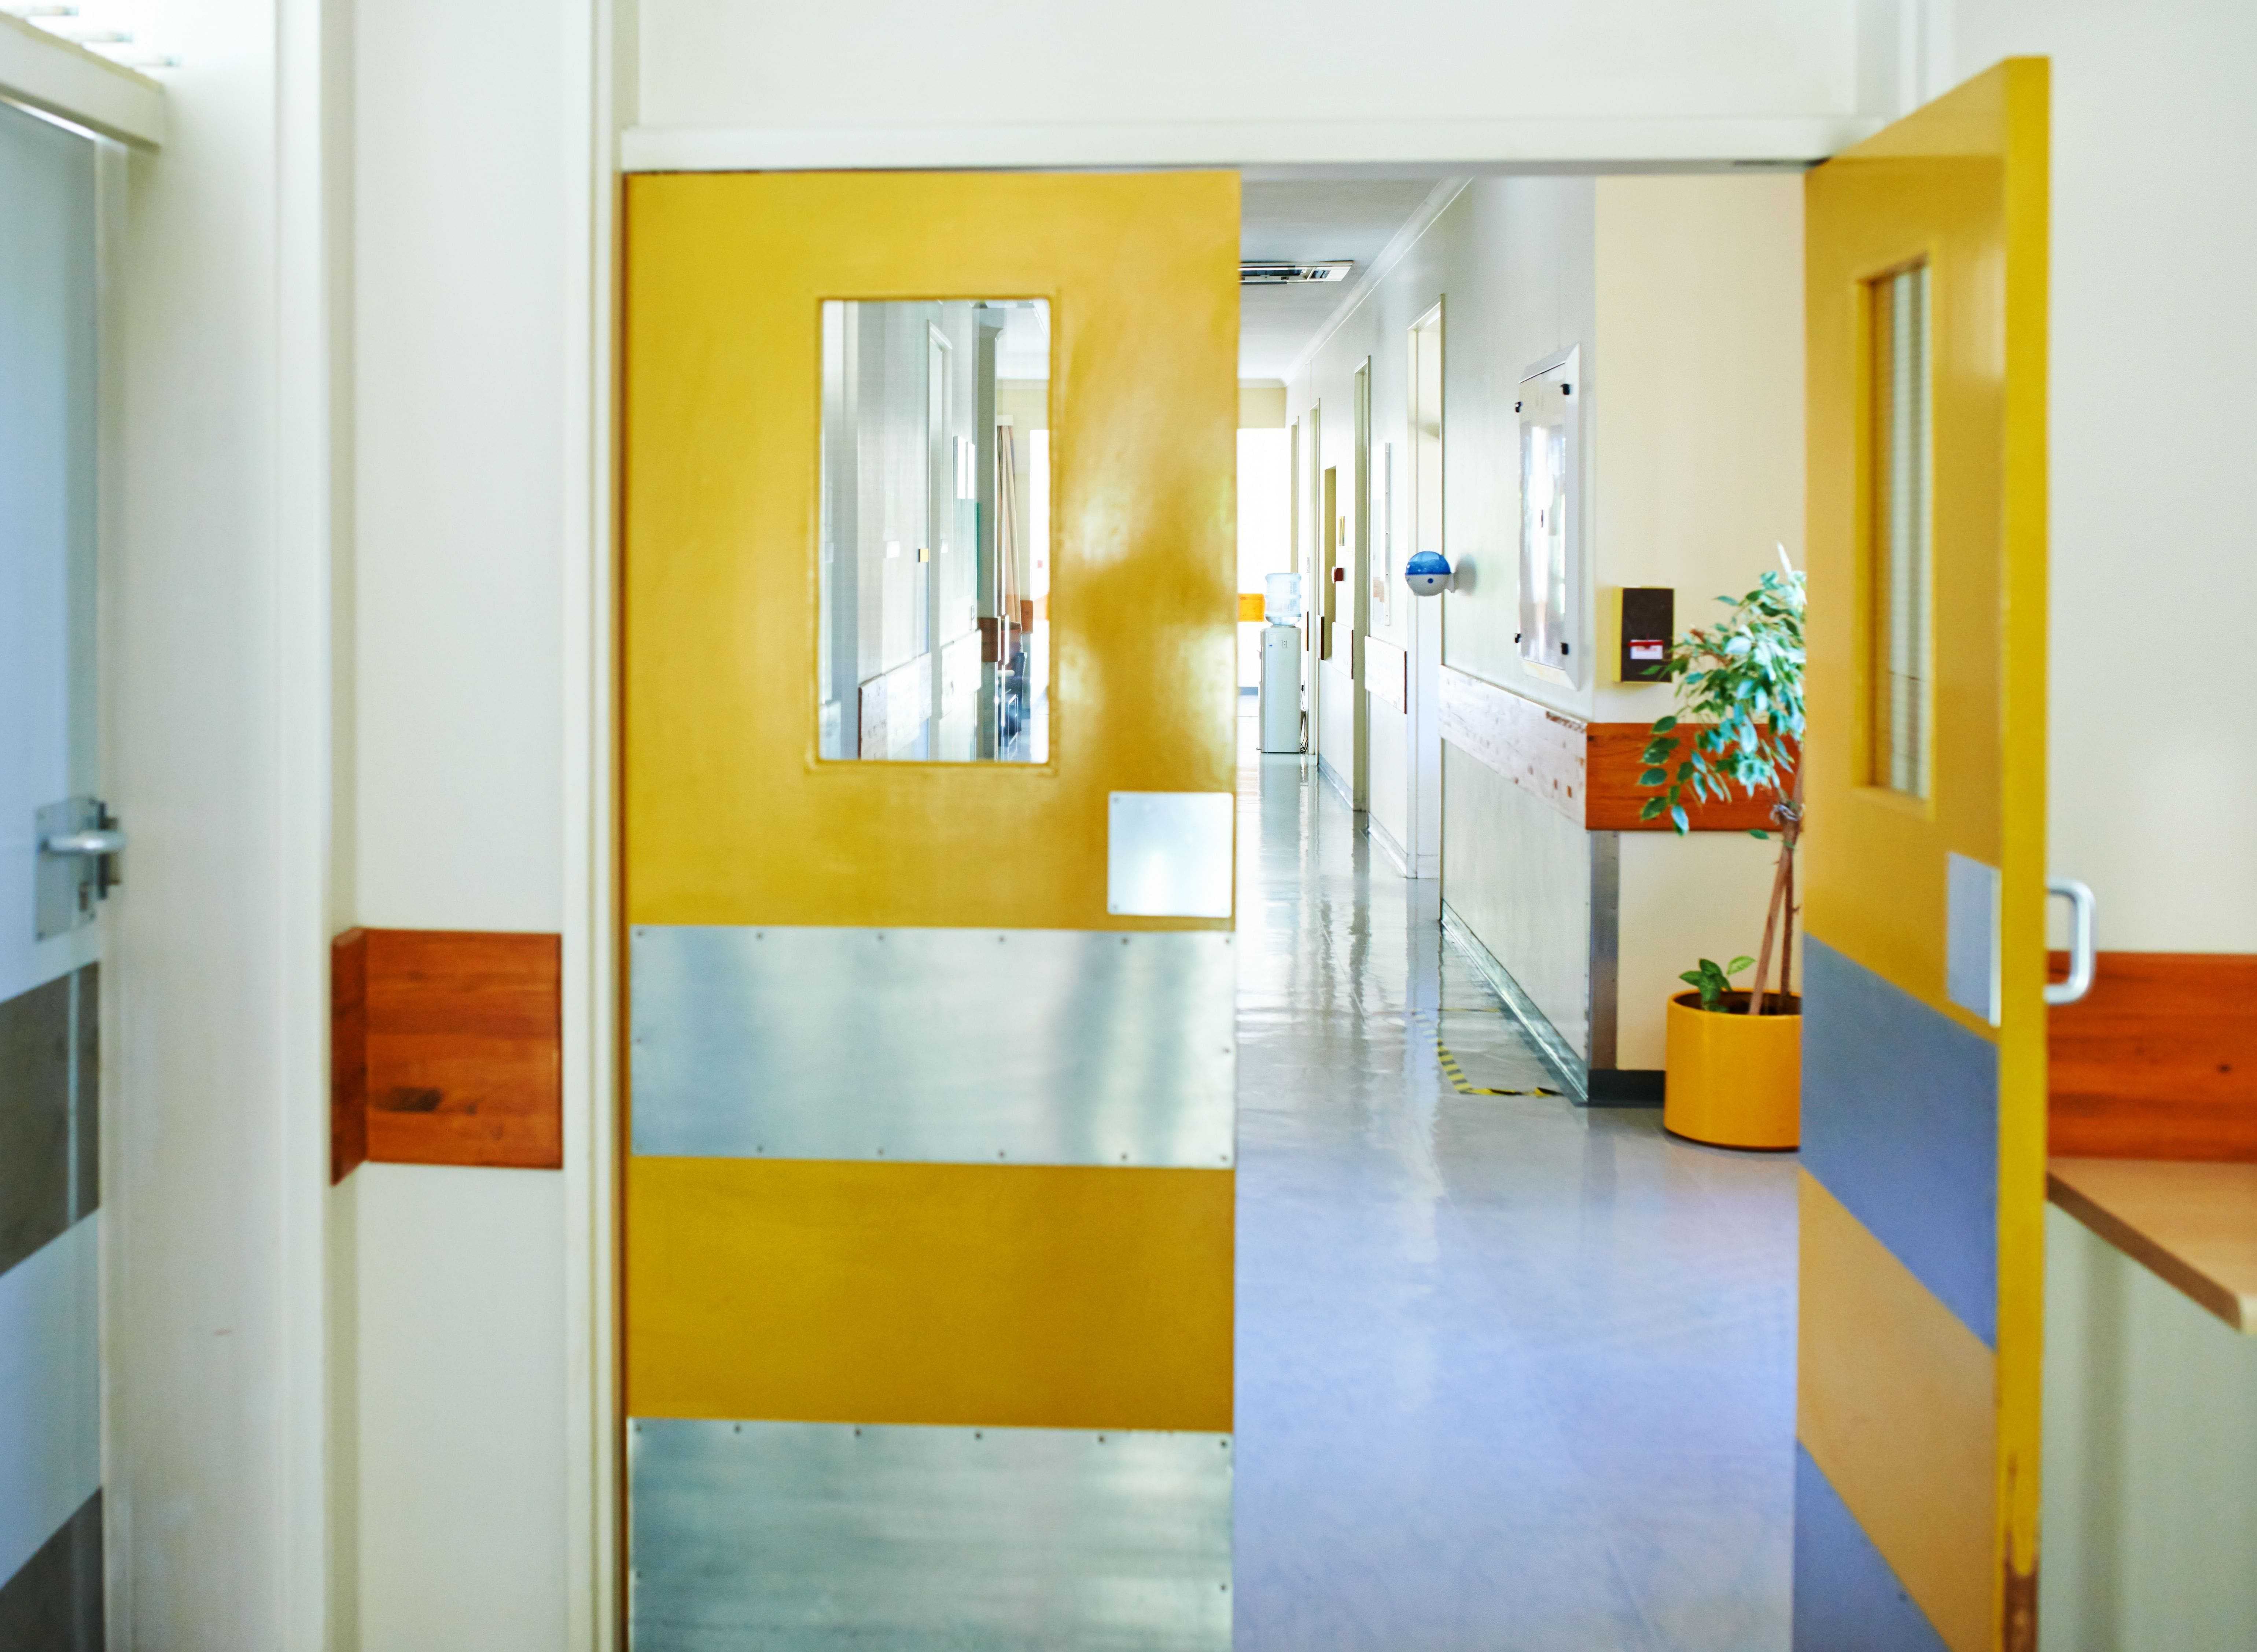 yellow pedestrian swing doors in a healthcare facility corridor